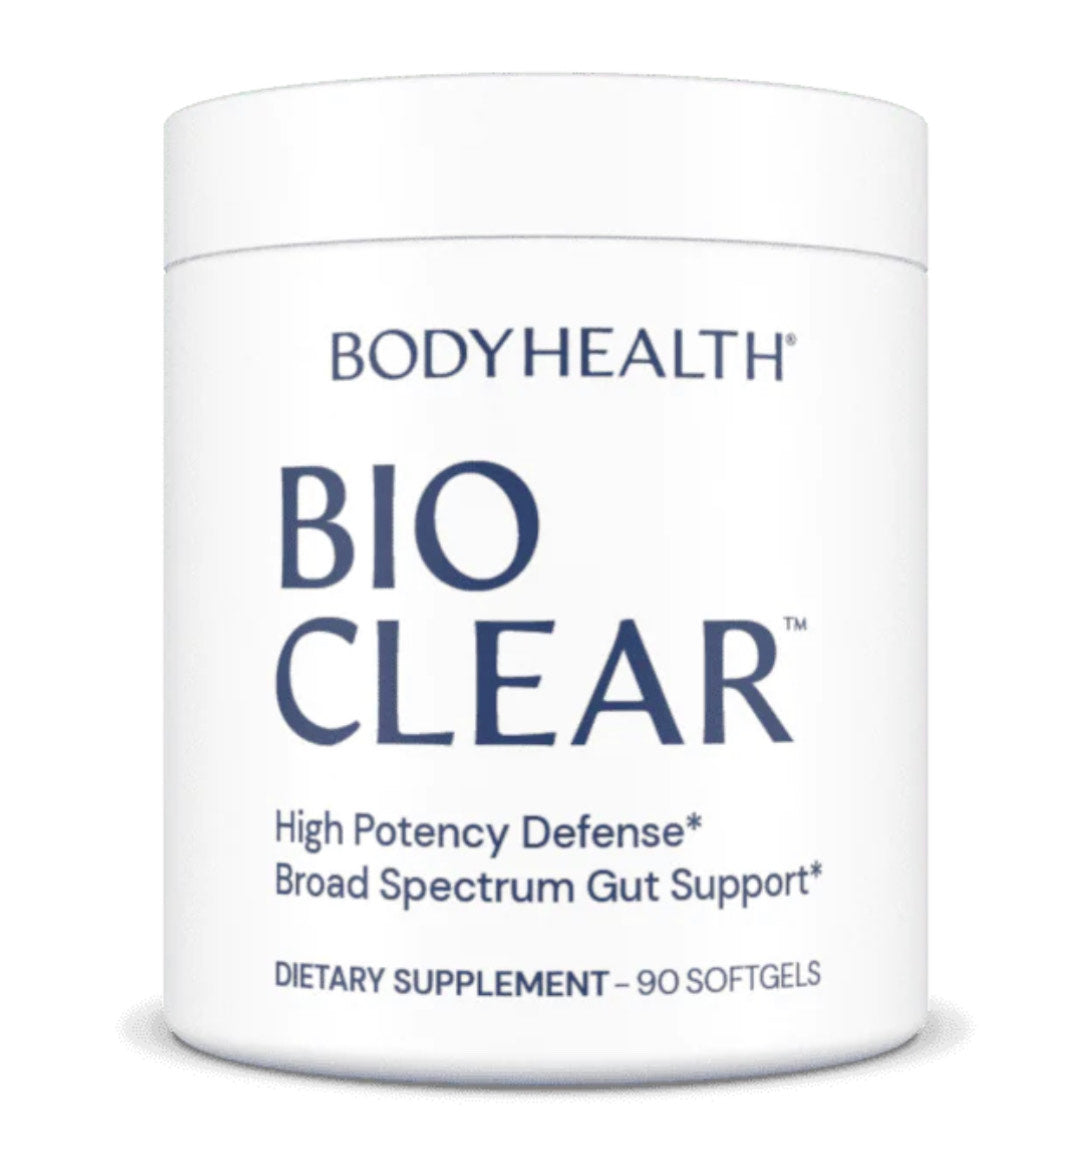 BodyHealth BioClear